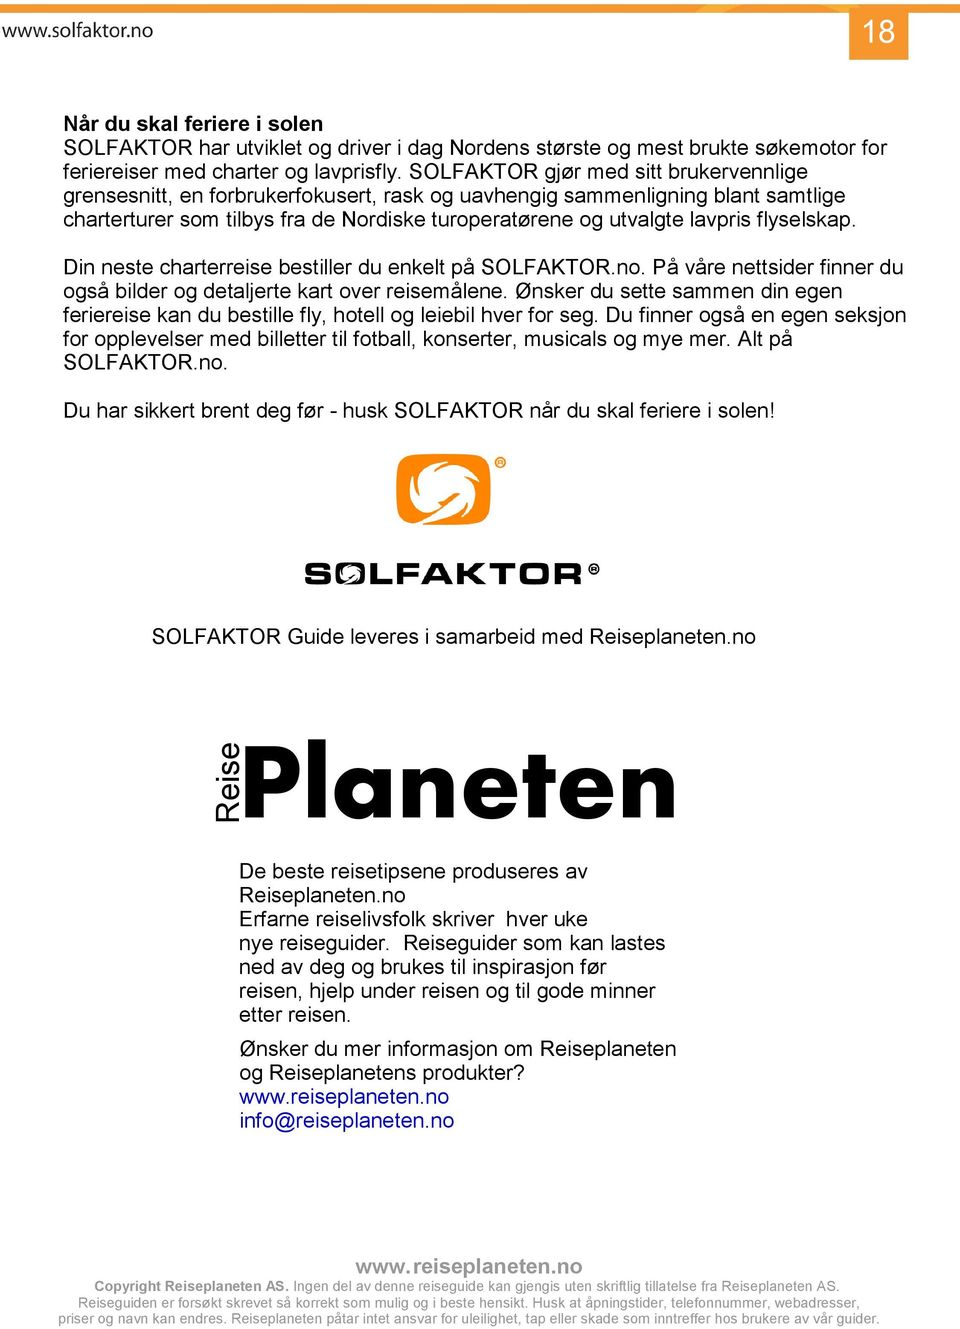 SOLFAKTOR gjør med sitt brukervennlige grensesnitt, en forbrukerfokusert, rask og uavhengig sammenligning blant samtlige charterturer som tilbys fra de Nordiske turoperatørene og utvalgte lavpris